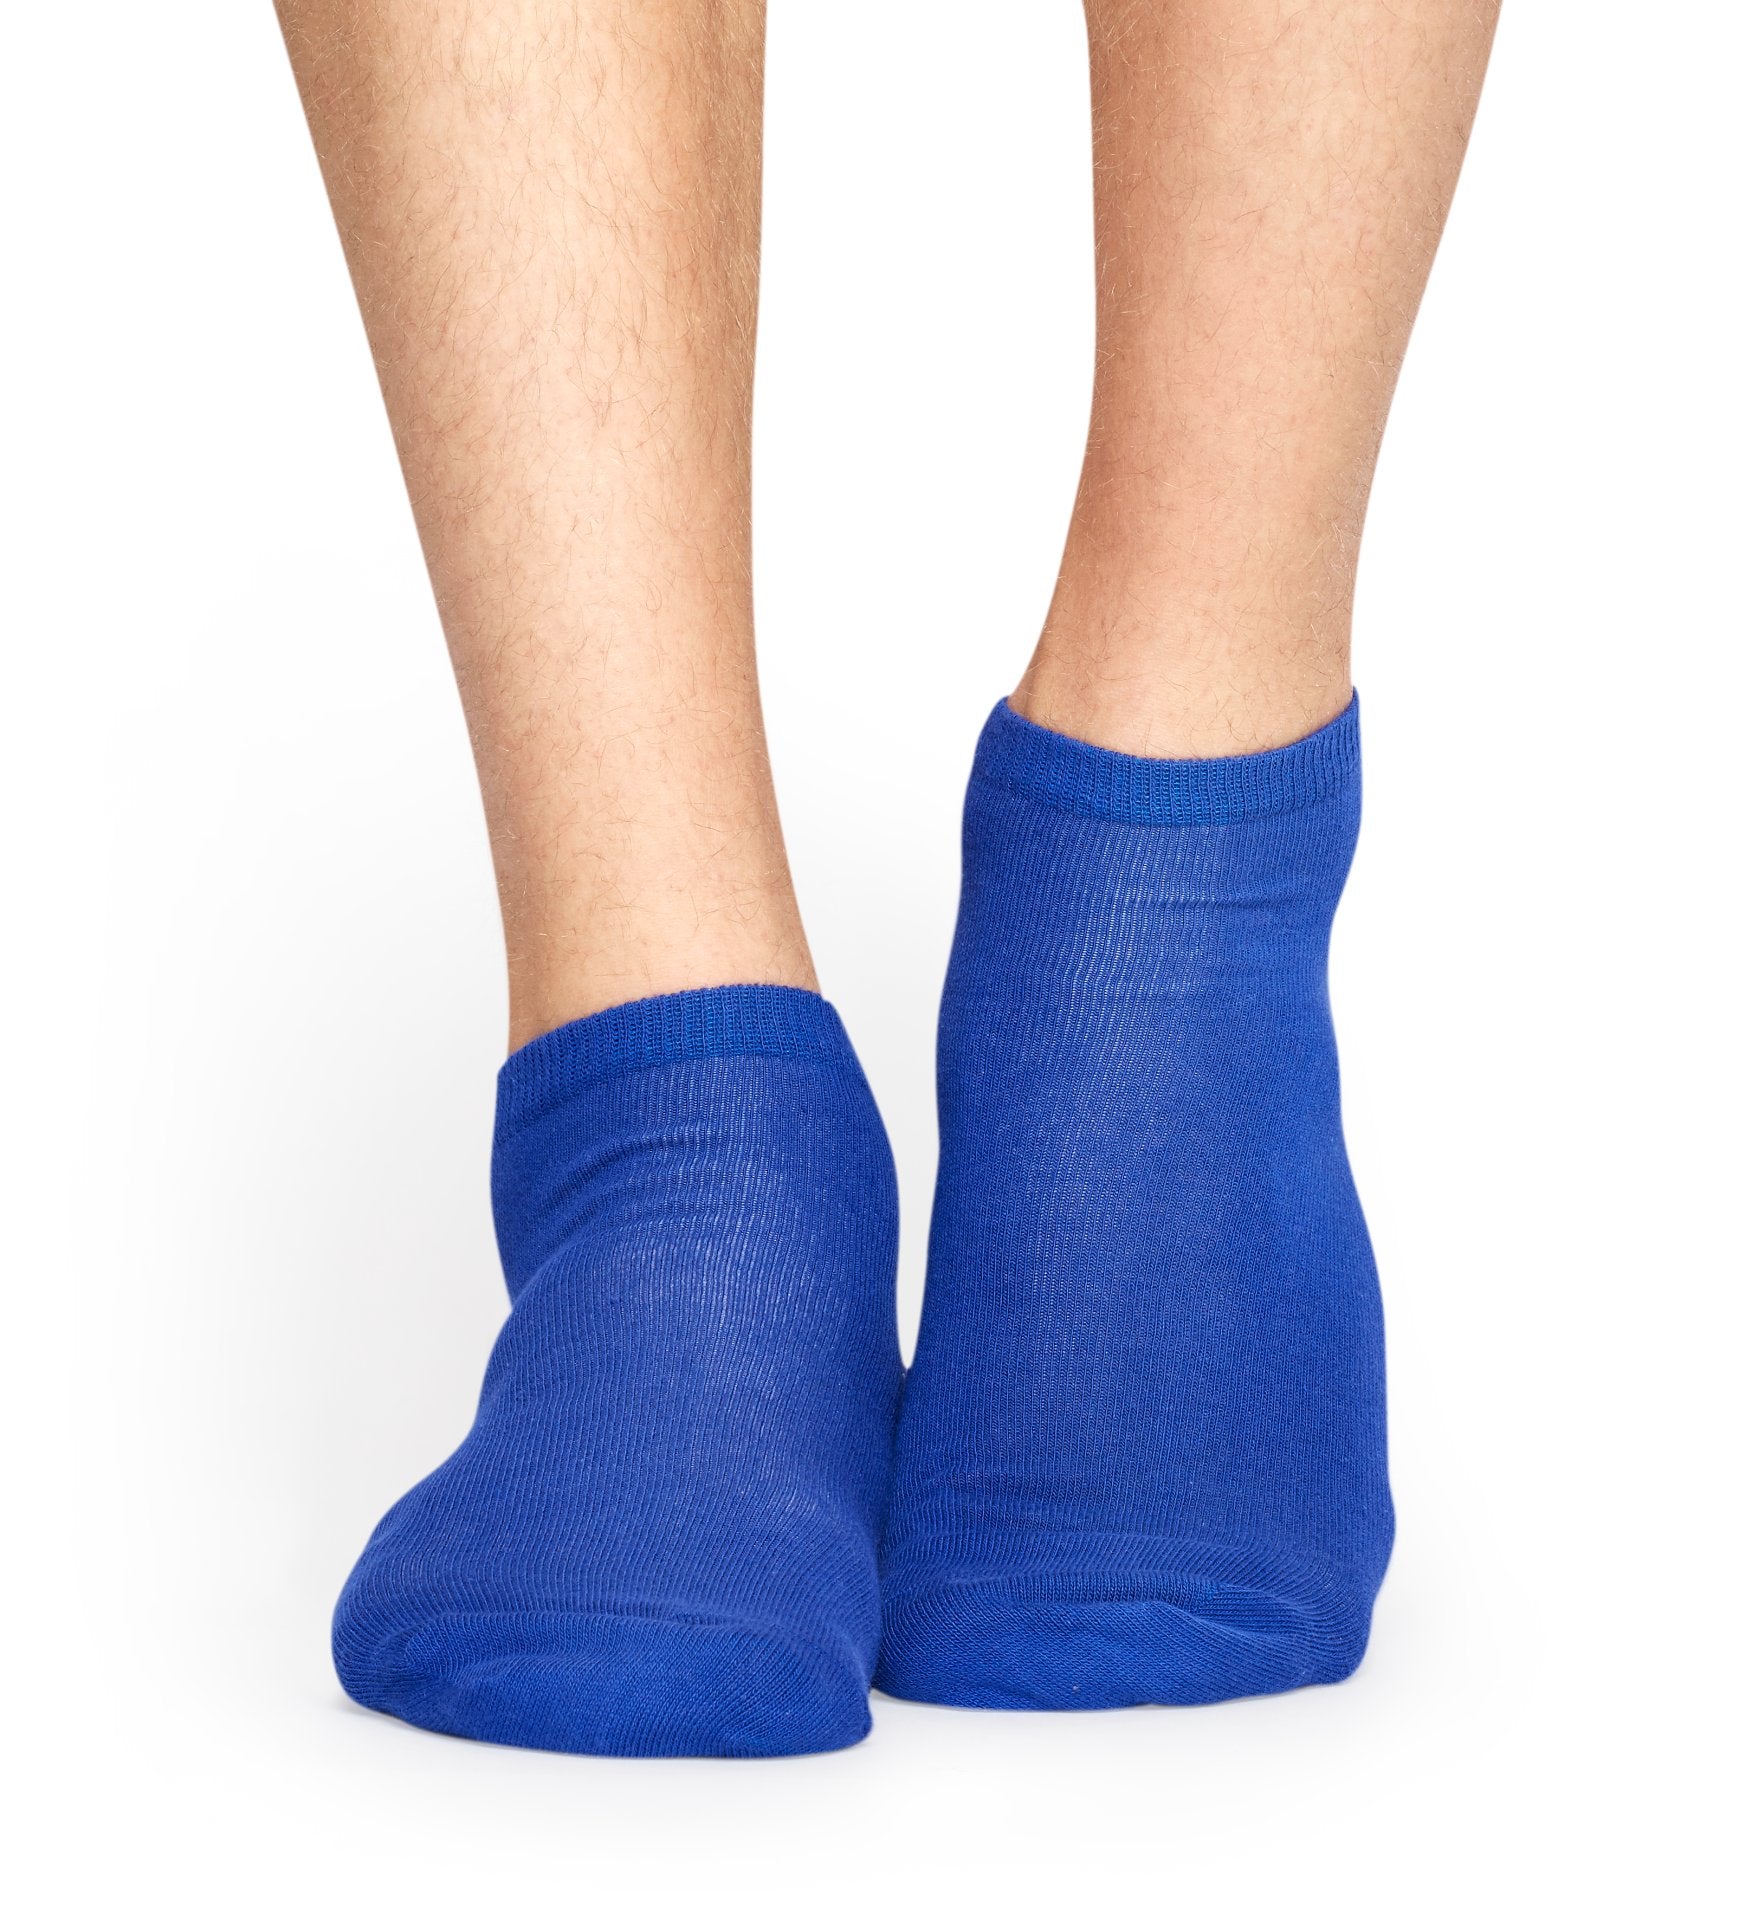 Nízke ponožky Happy Socks, vzor Hamburger (modré) - 2 páry